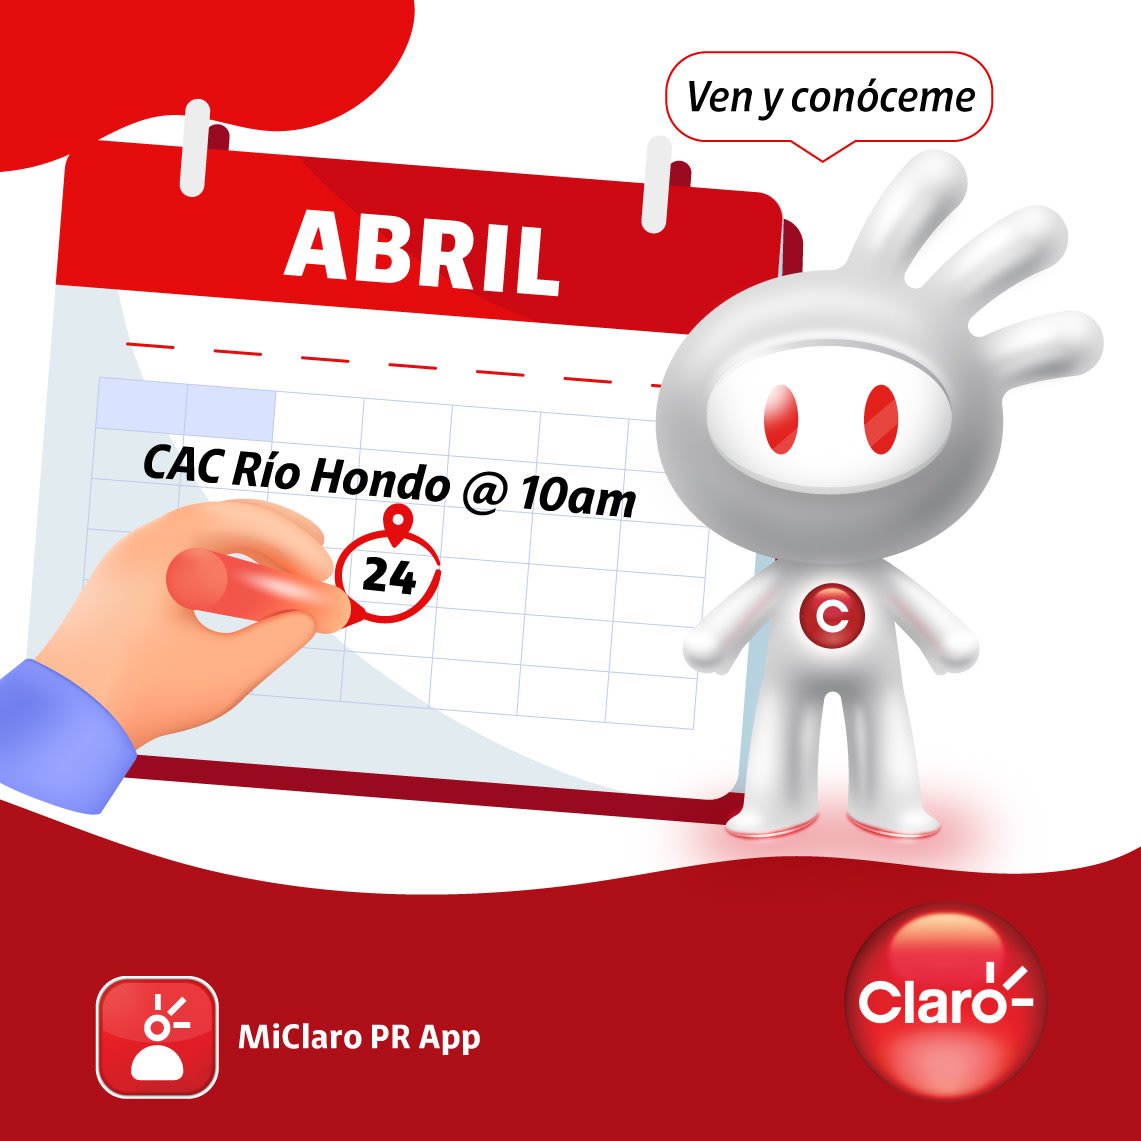 ¡ClaroBot tiene la respuesta! Te ayudo con tus cuentas, conocer tu balance y hacer pagos. ✅ 🤖 Date la vuelta este 24 de abril por Centro de Atención al Cliente en Río Hondo, Bayamón de 10:00am-1:00pm. ¡Te esperamos!